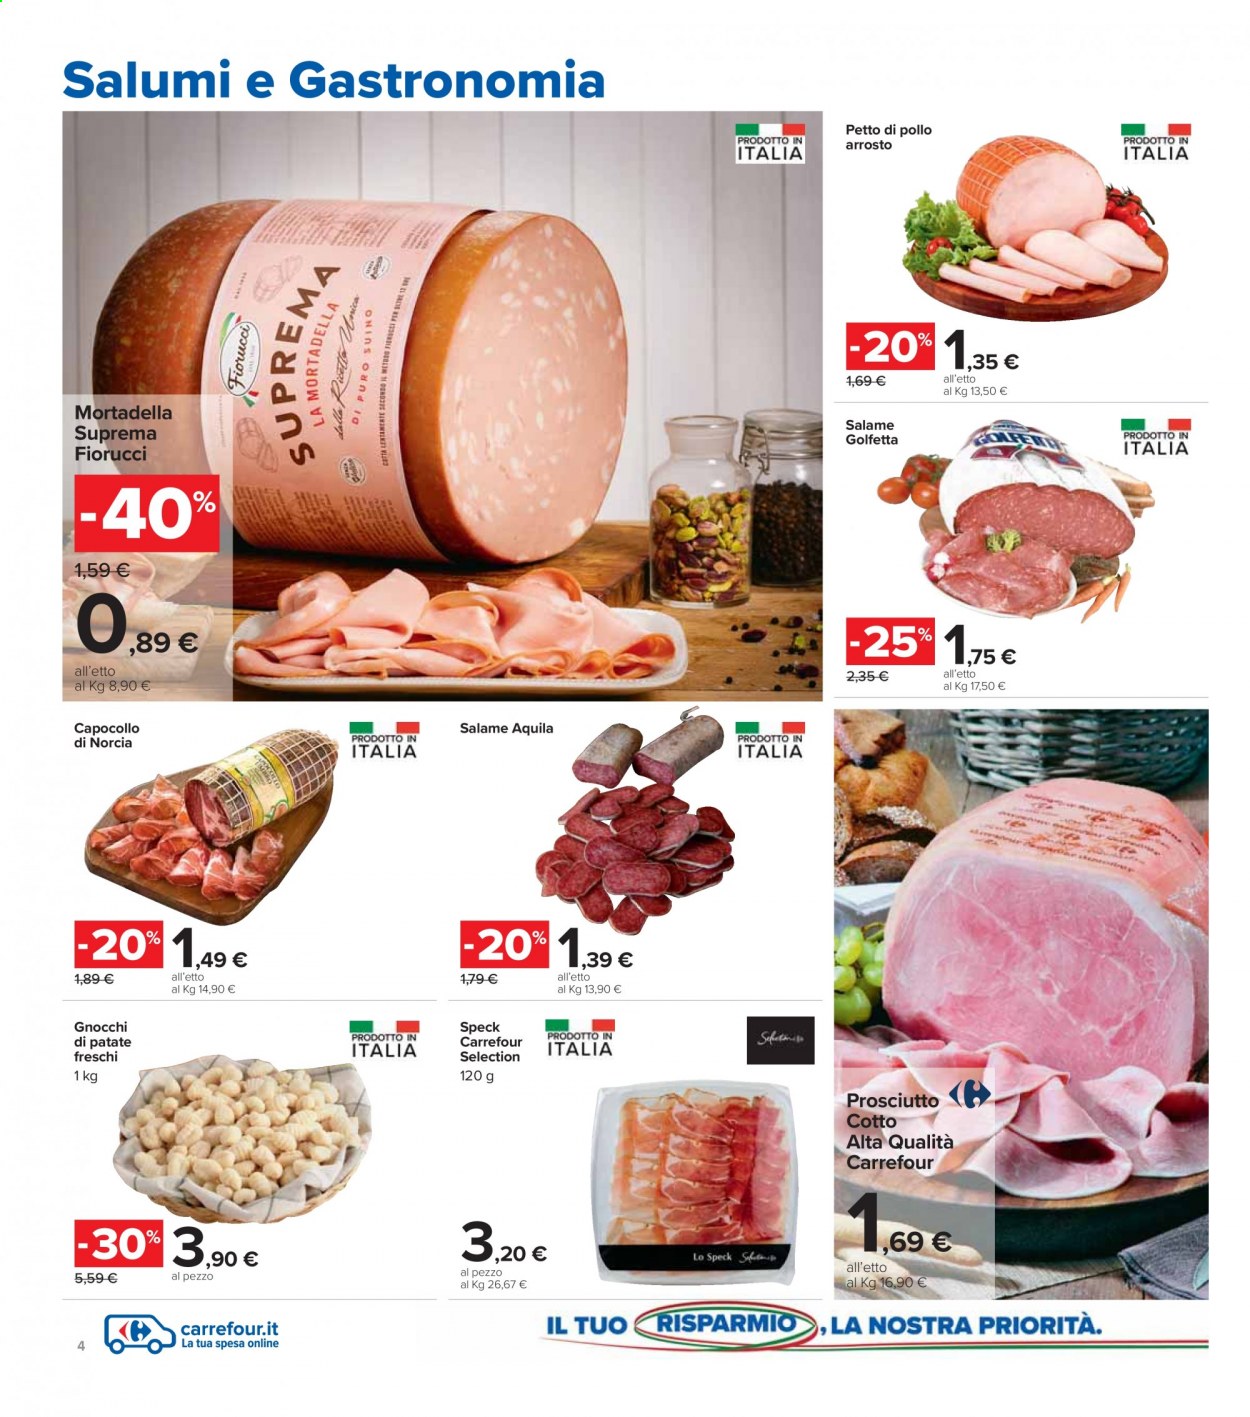 thumbnail - Volantino Carrefour - 11/2/2021 - 25/2/2021 - Prodotti in offerta - petto di pollo, capocollo, Fiorucci, speck, prosciutto cotto, mortadella, petto di pollo arrosto, gnocchi. Pagina 4.